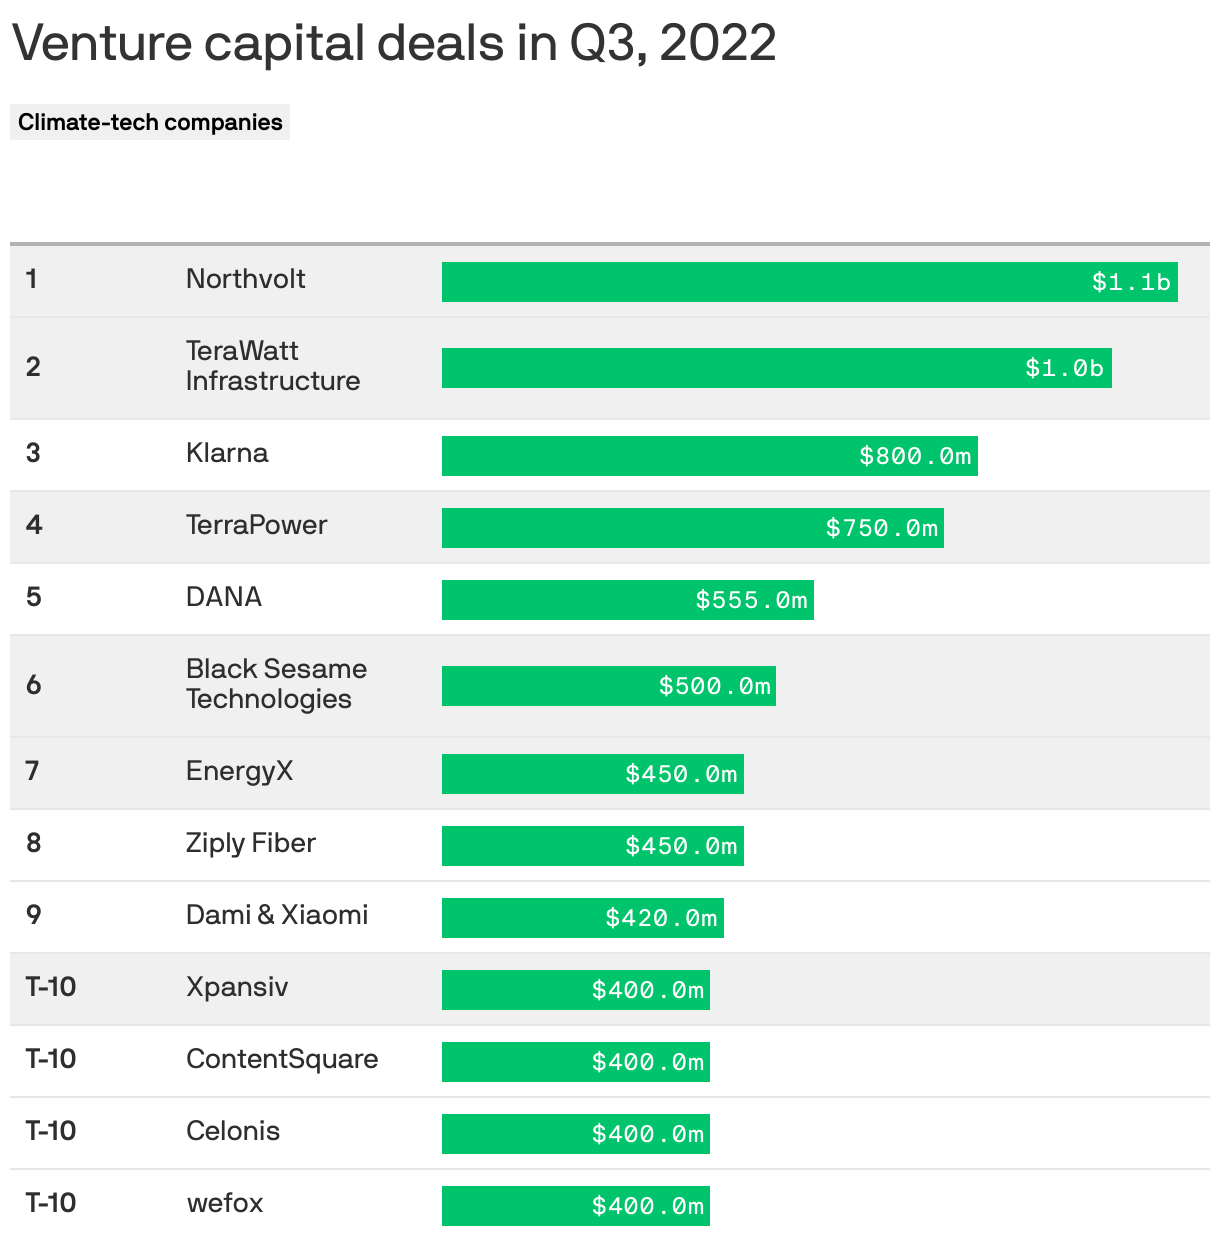 Venture capital deals in Q3, 2022